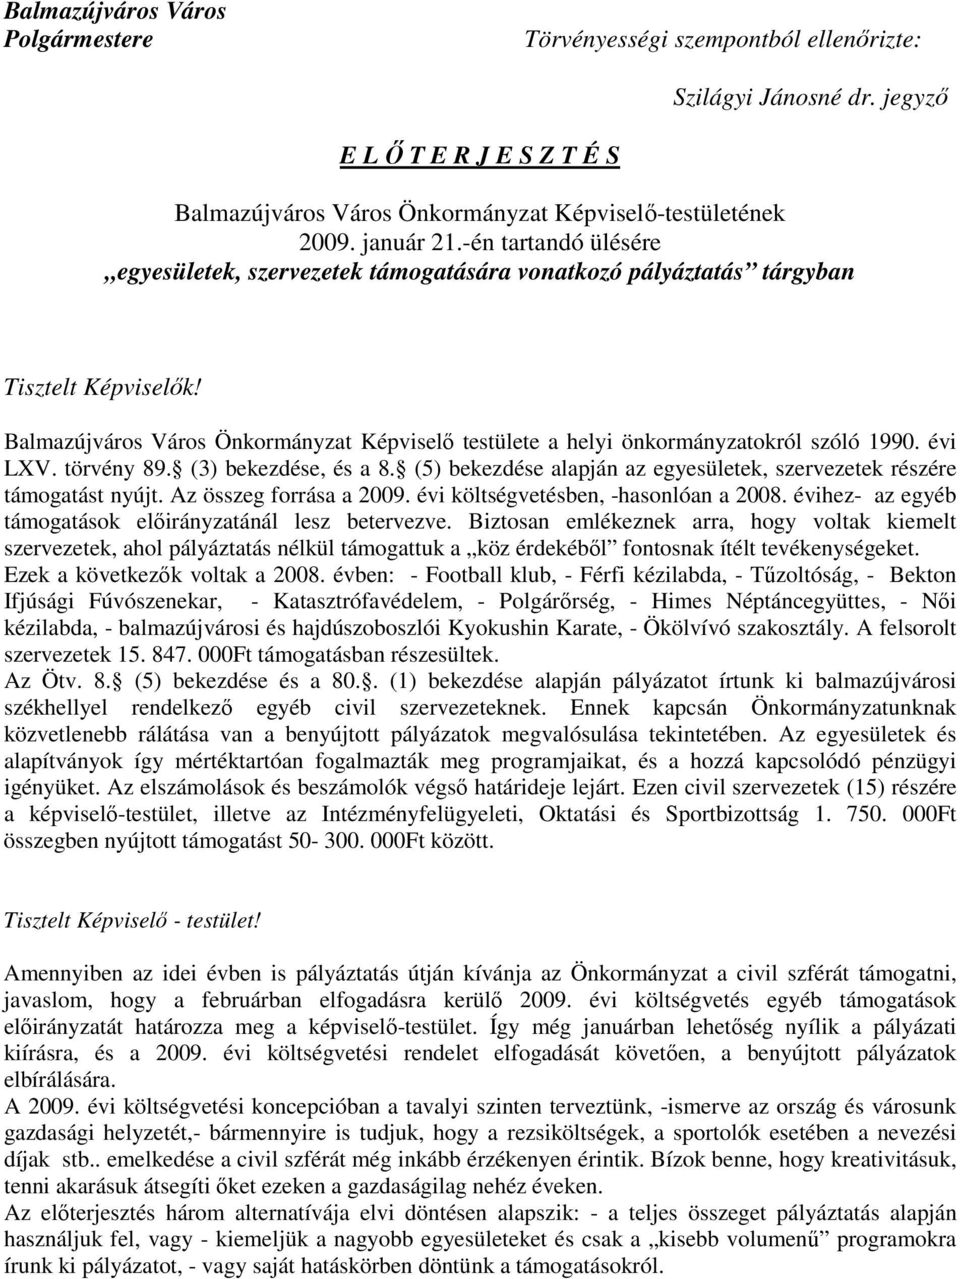 Balmazújváros Város Önkormányzat Képviselı testülete a helyi önkormányzatokról szóló 1990. évi LXV. törvény 89. (3) bekezdése, és a 8.